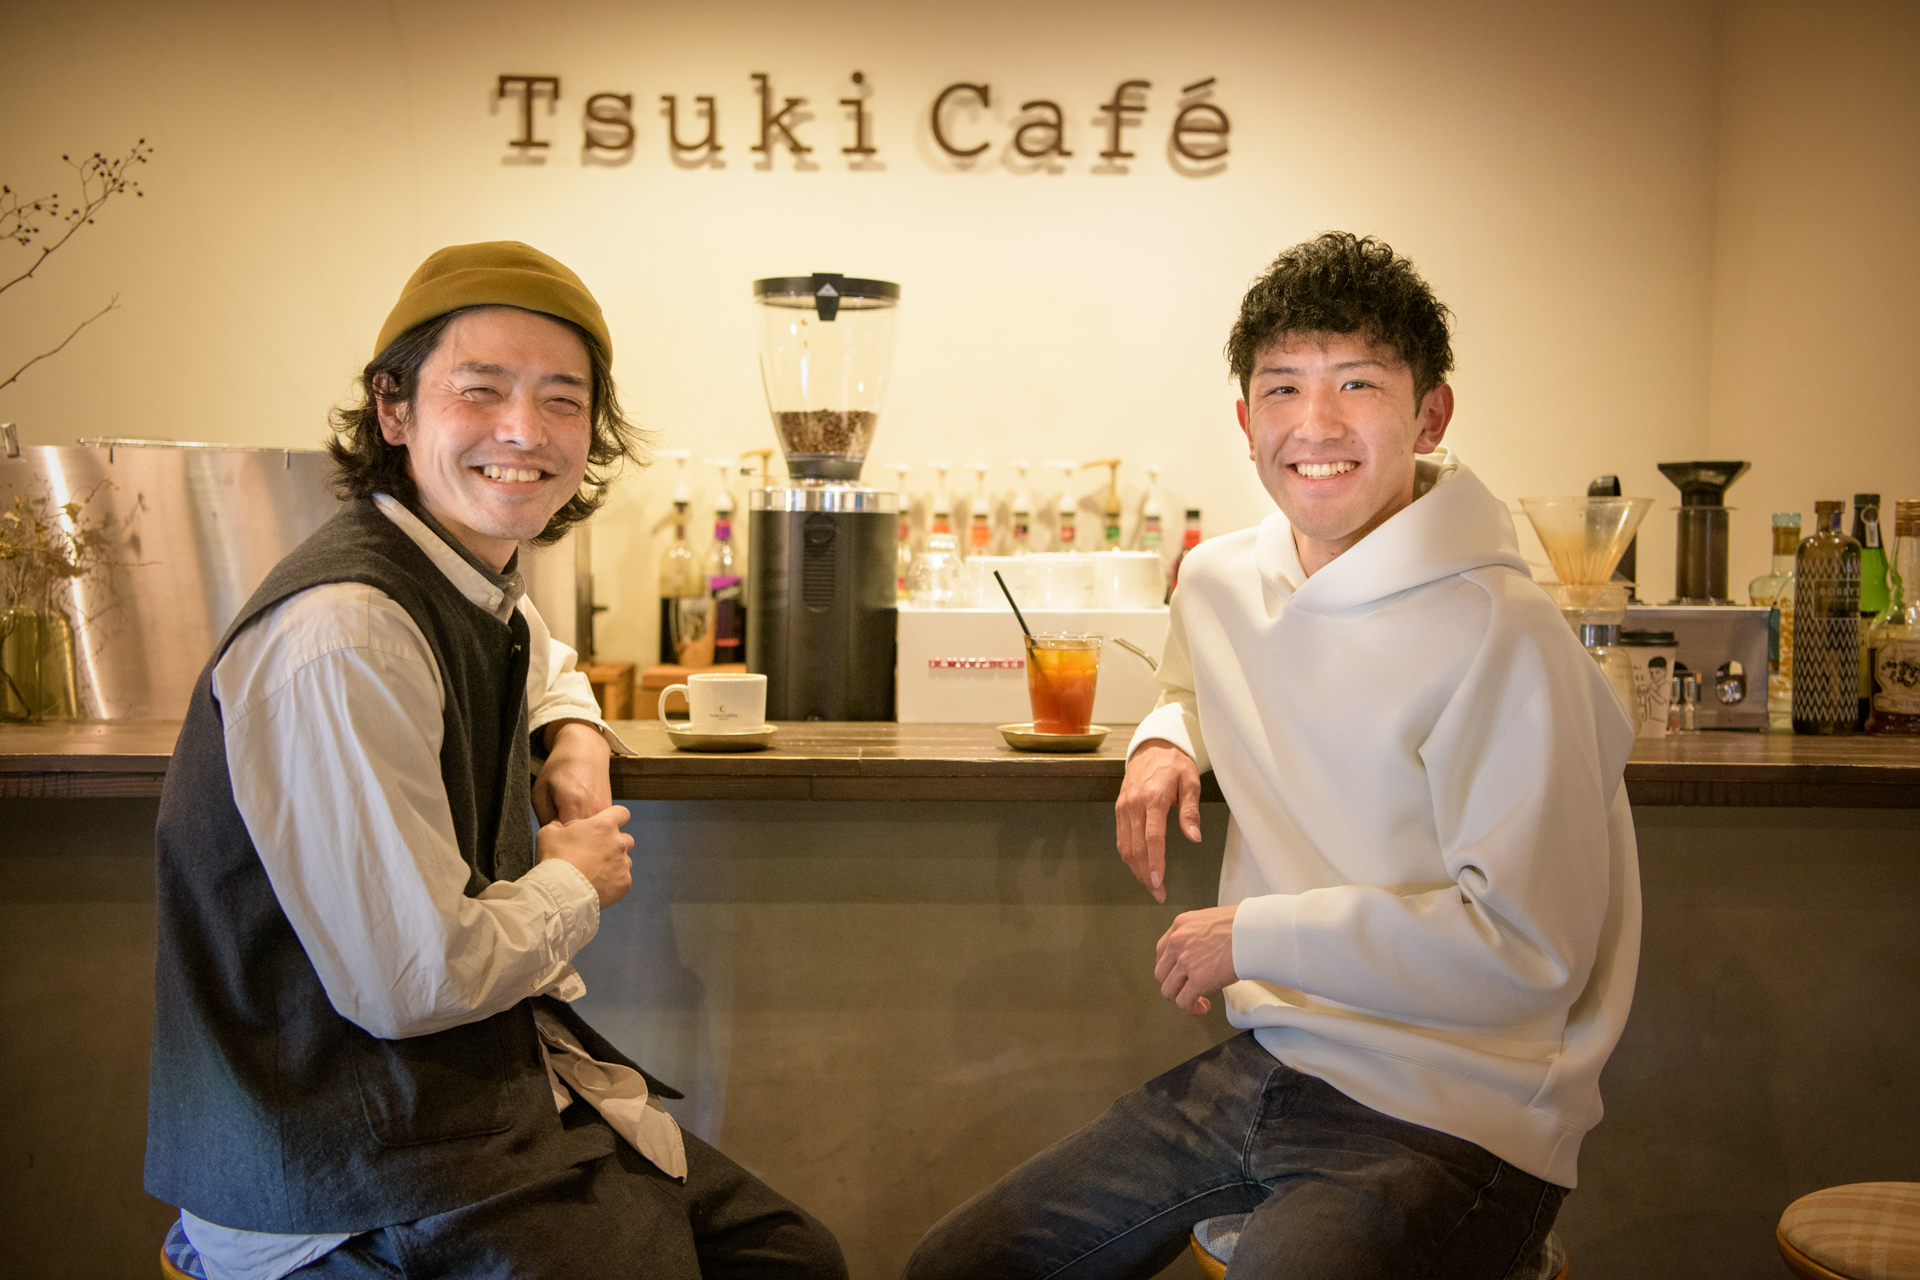 特集記事 山形市のおしゃれカフェ Tsuki Cafe にて オーナー月岡さんとコーヒーの魅力を語りあう Visit Yamagata